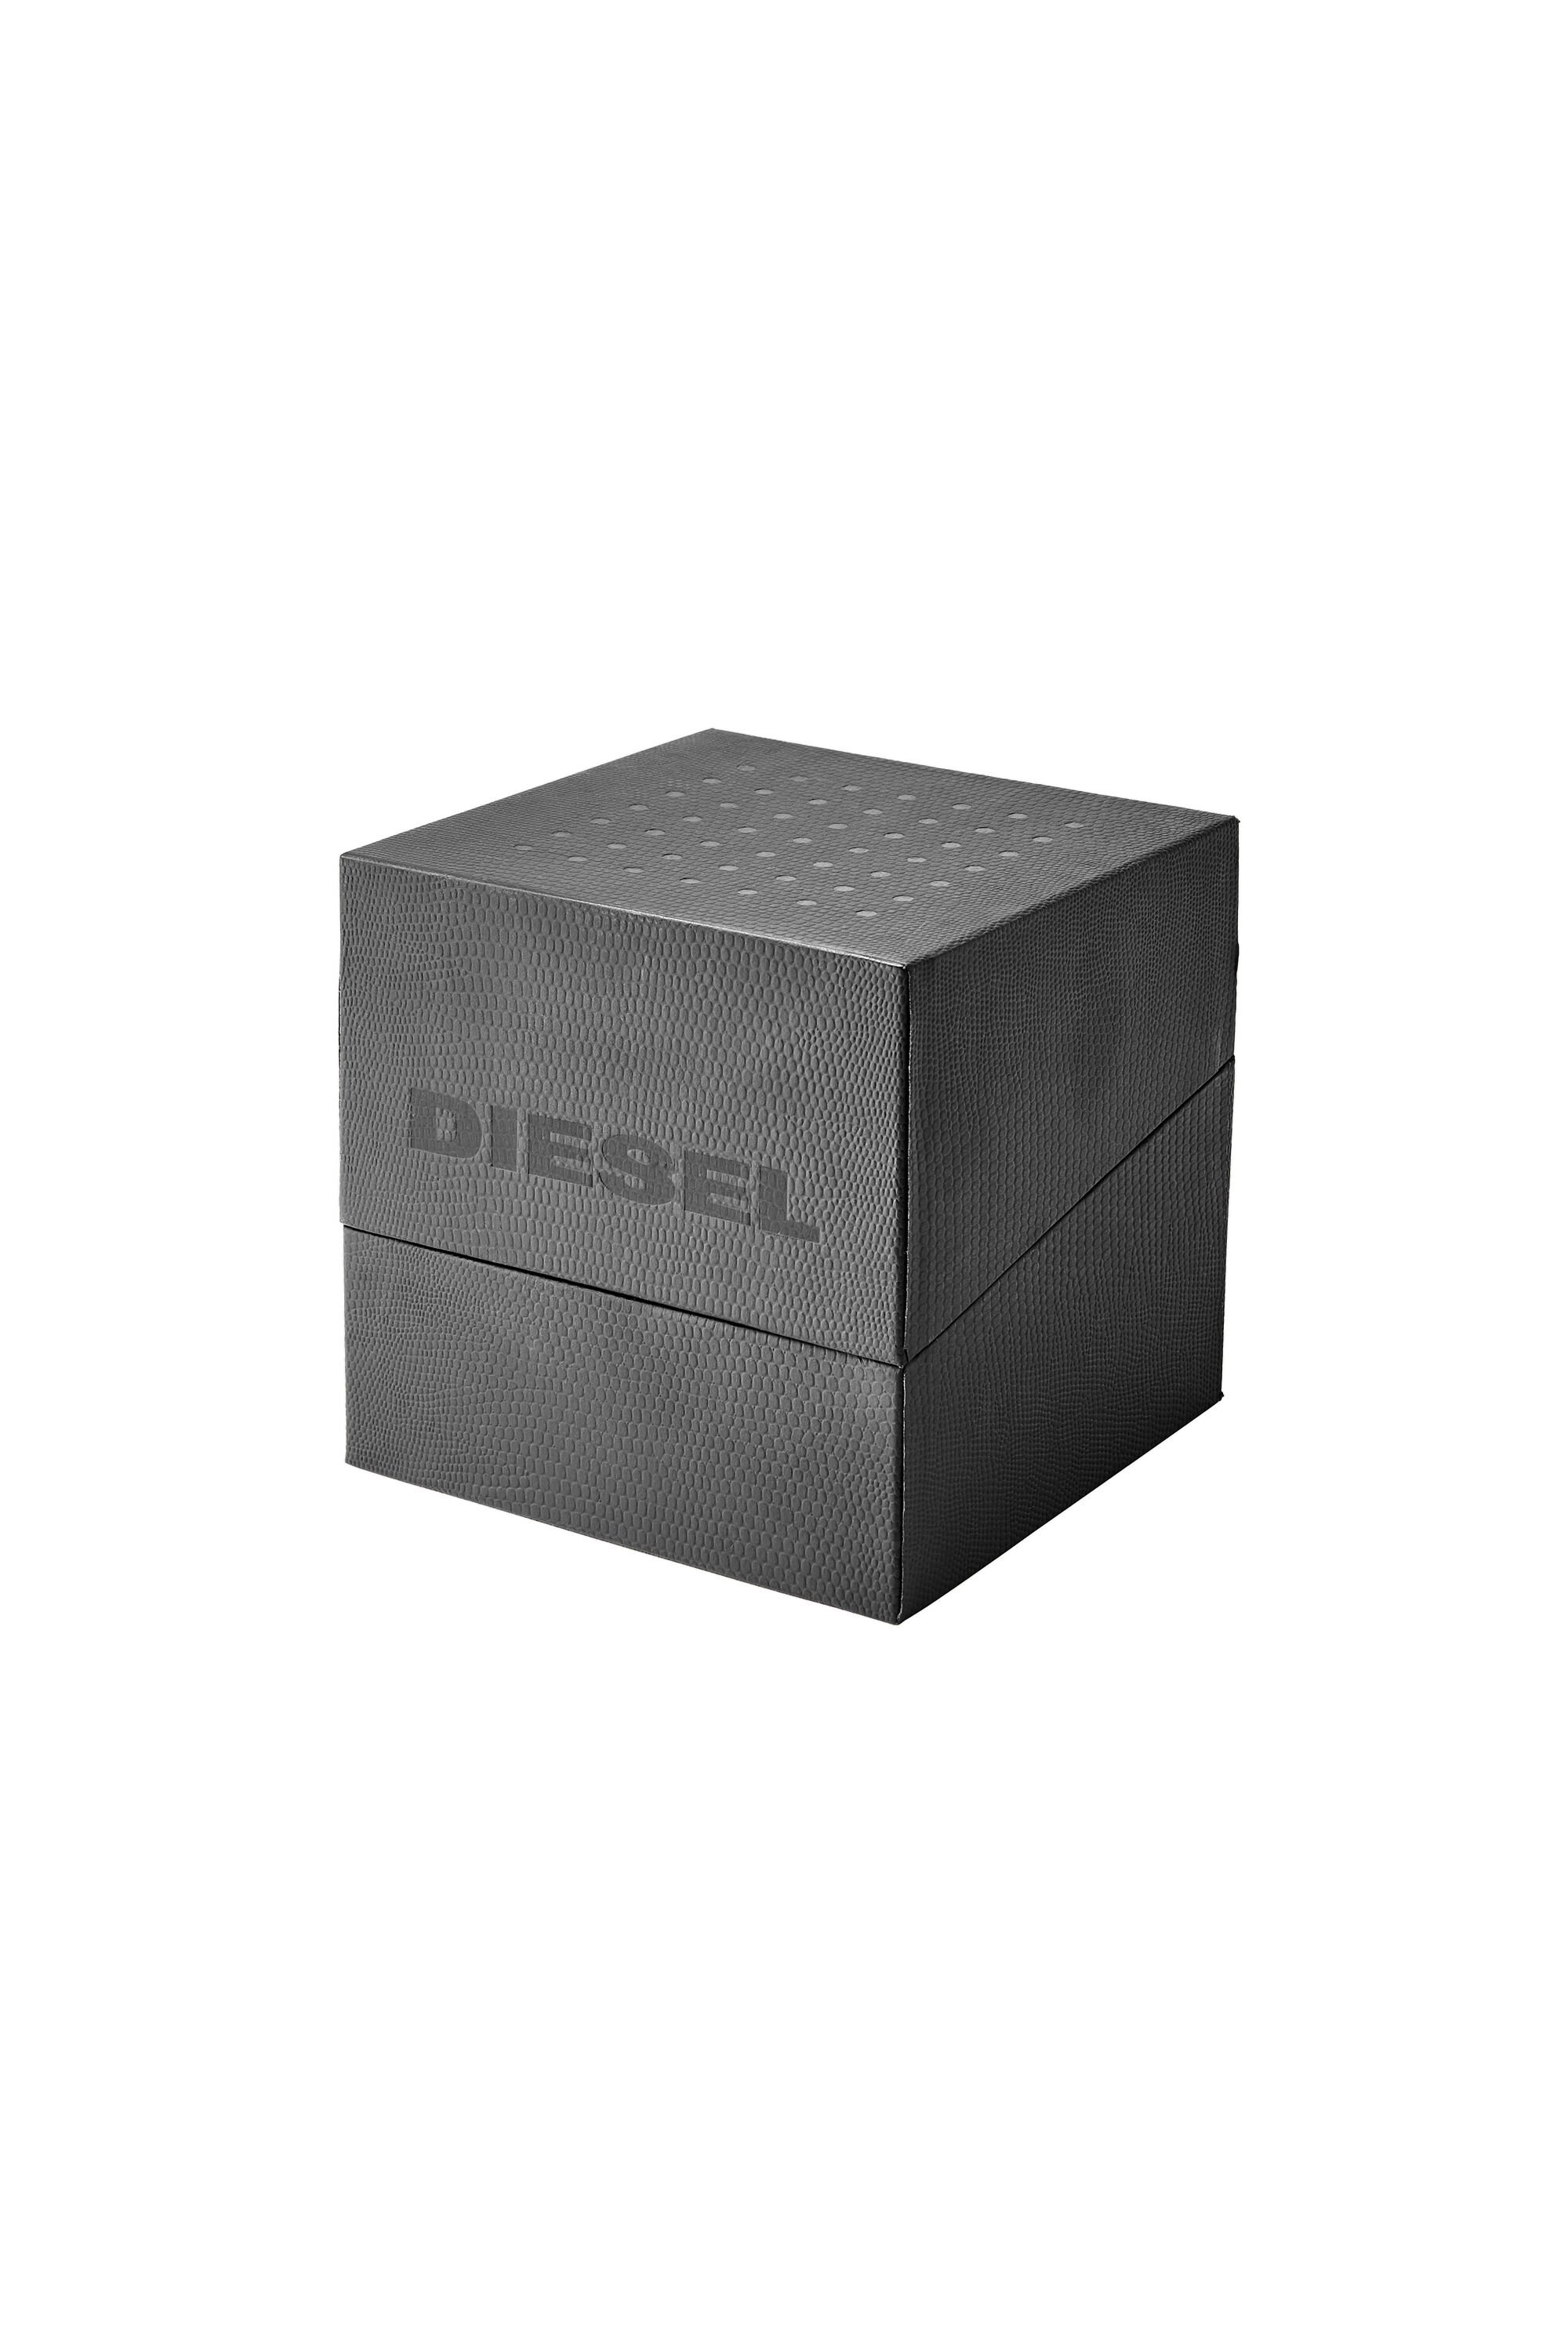 Diesel - DZ4523, Gris - Image 5